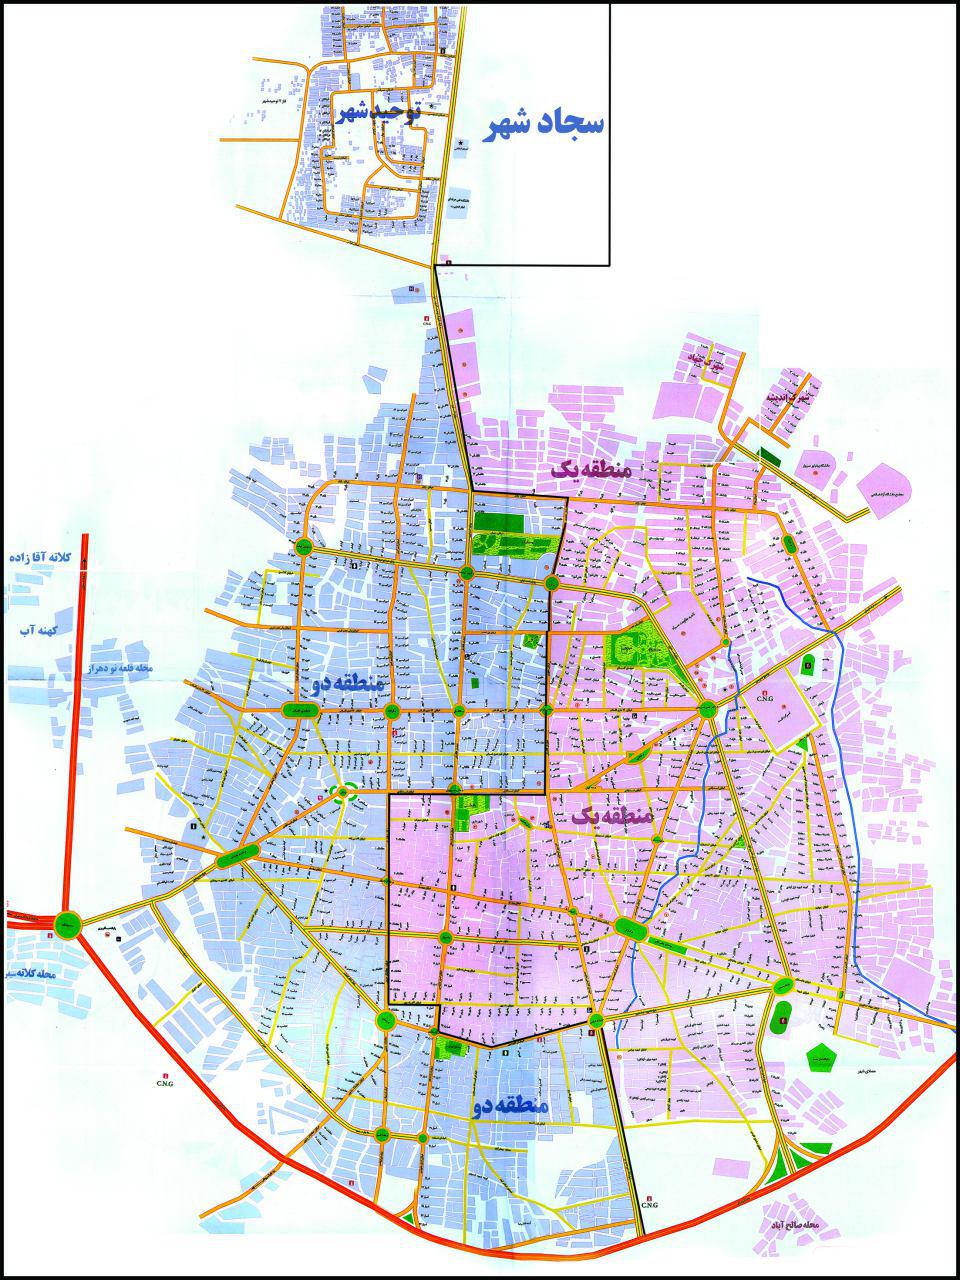 اسرارنامه: نقشه شهر سبزوار با مرزبندي مناطق دوگانه